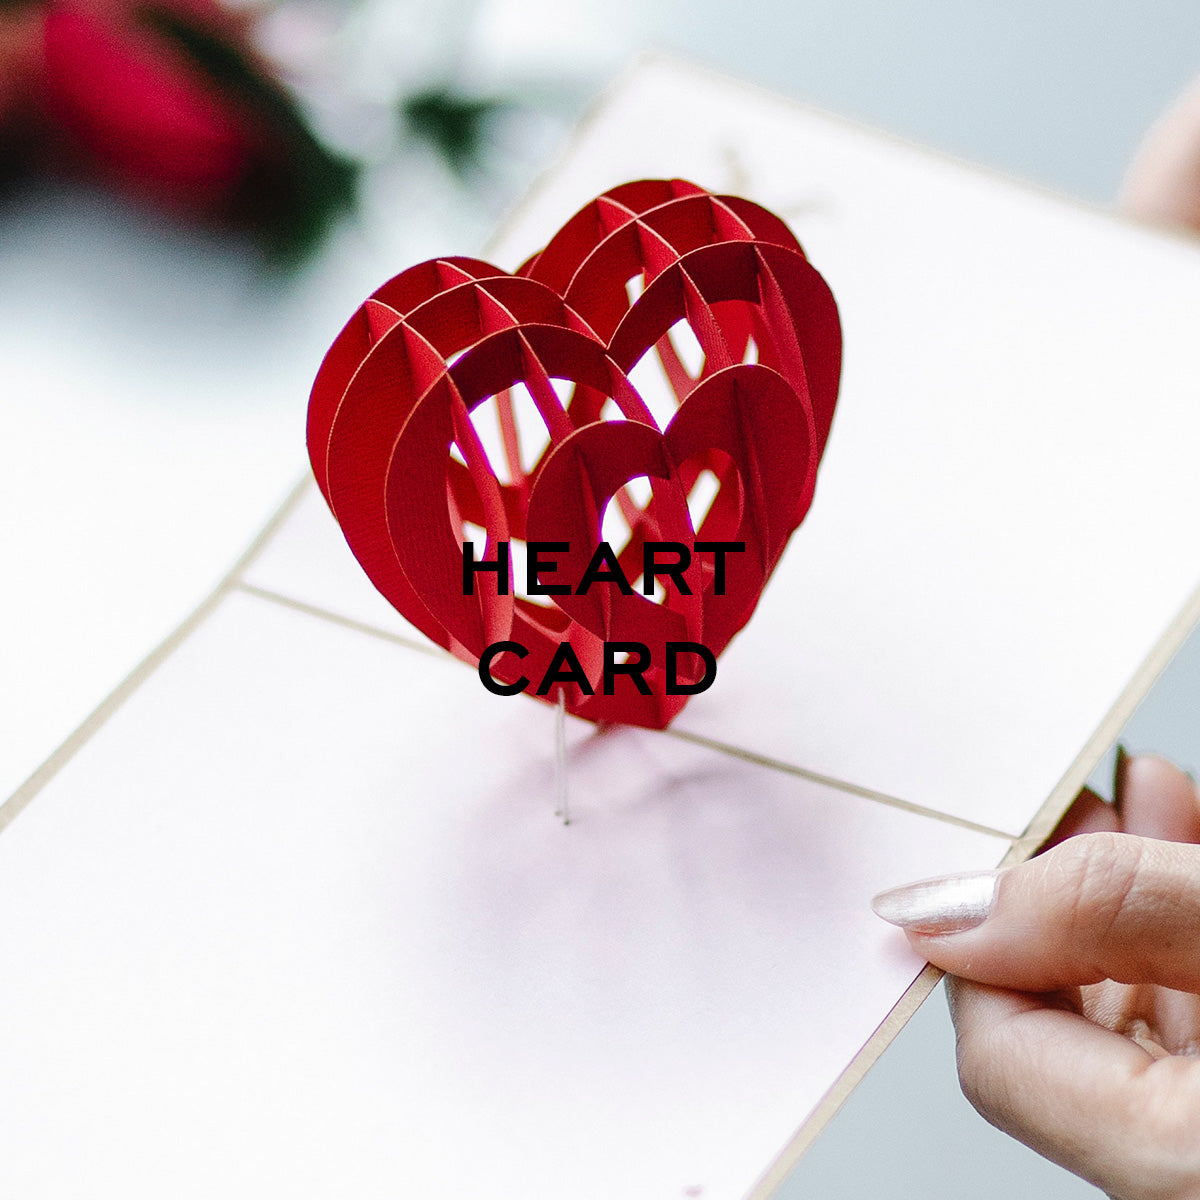 HEART CARD